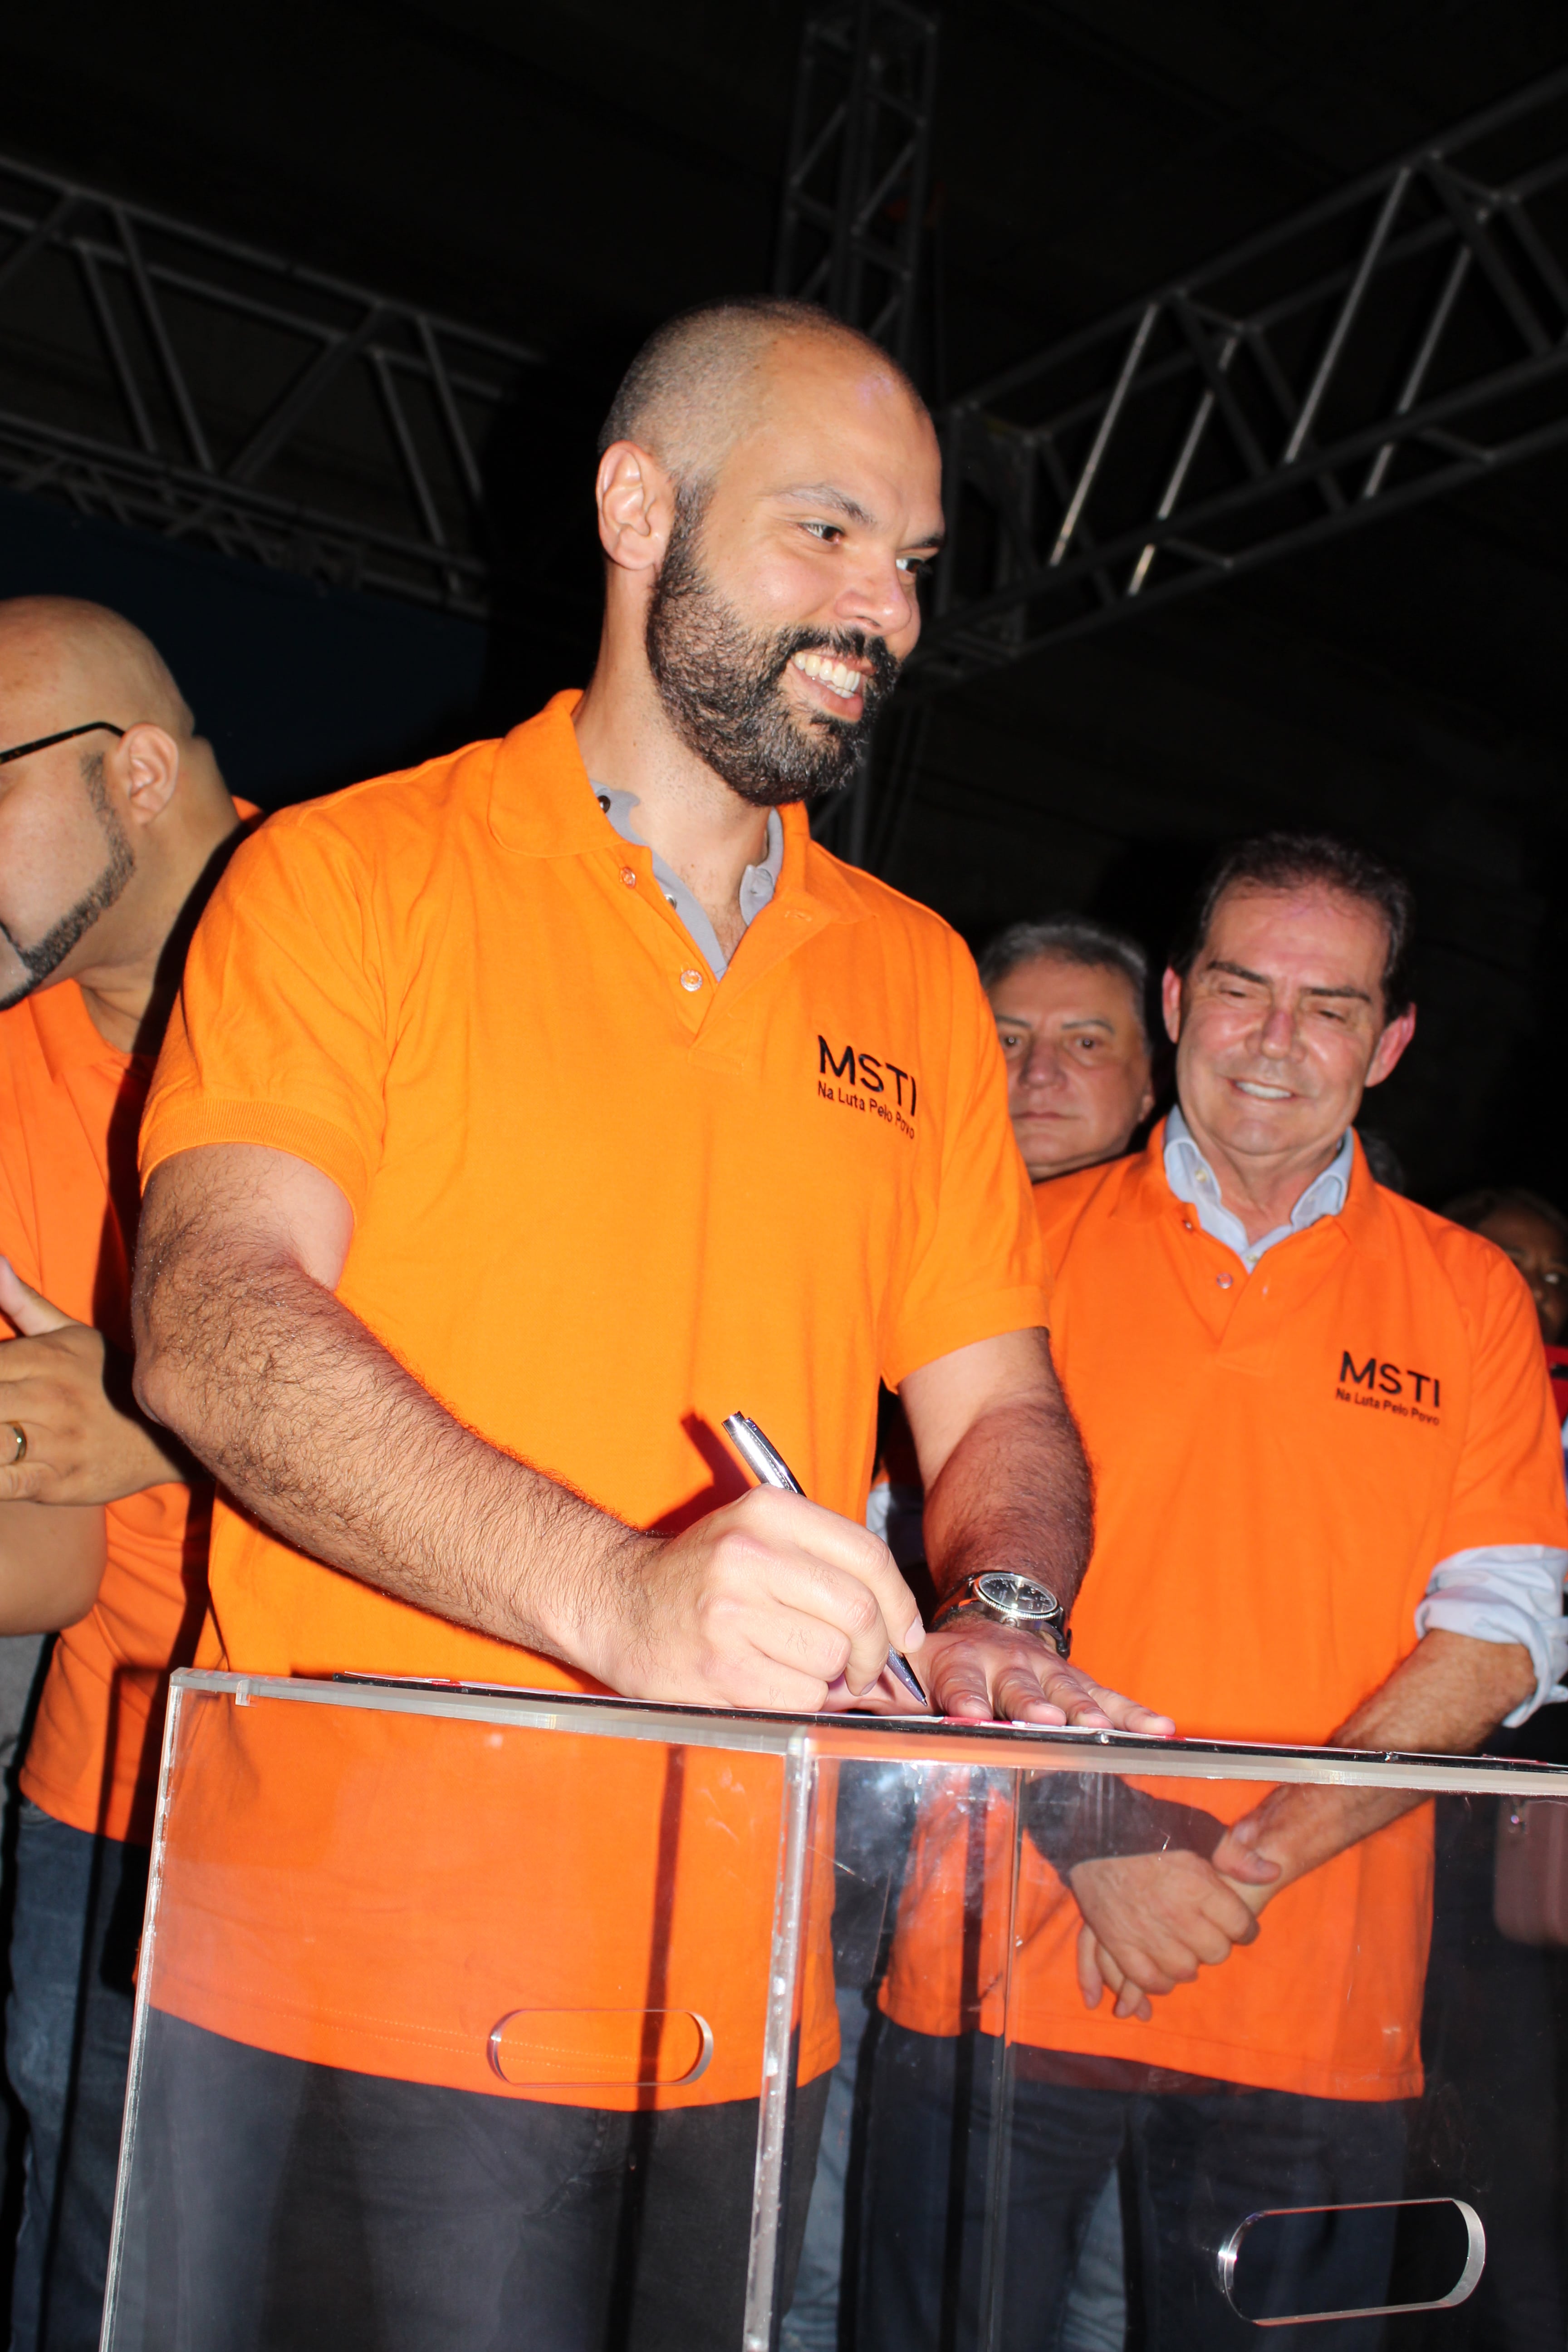 Na imagem, mostra o prefeito Bruno Covas vestido com a camiseta do MSTI, sorrindo e assinando um documento. 